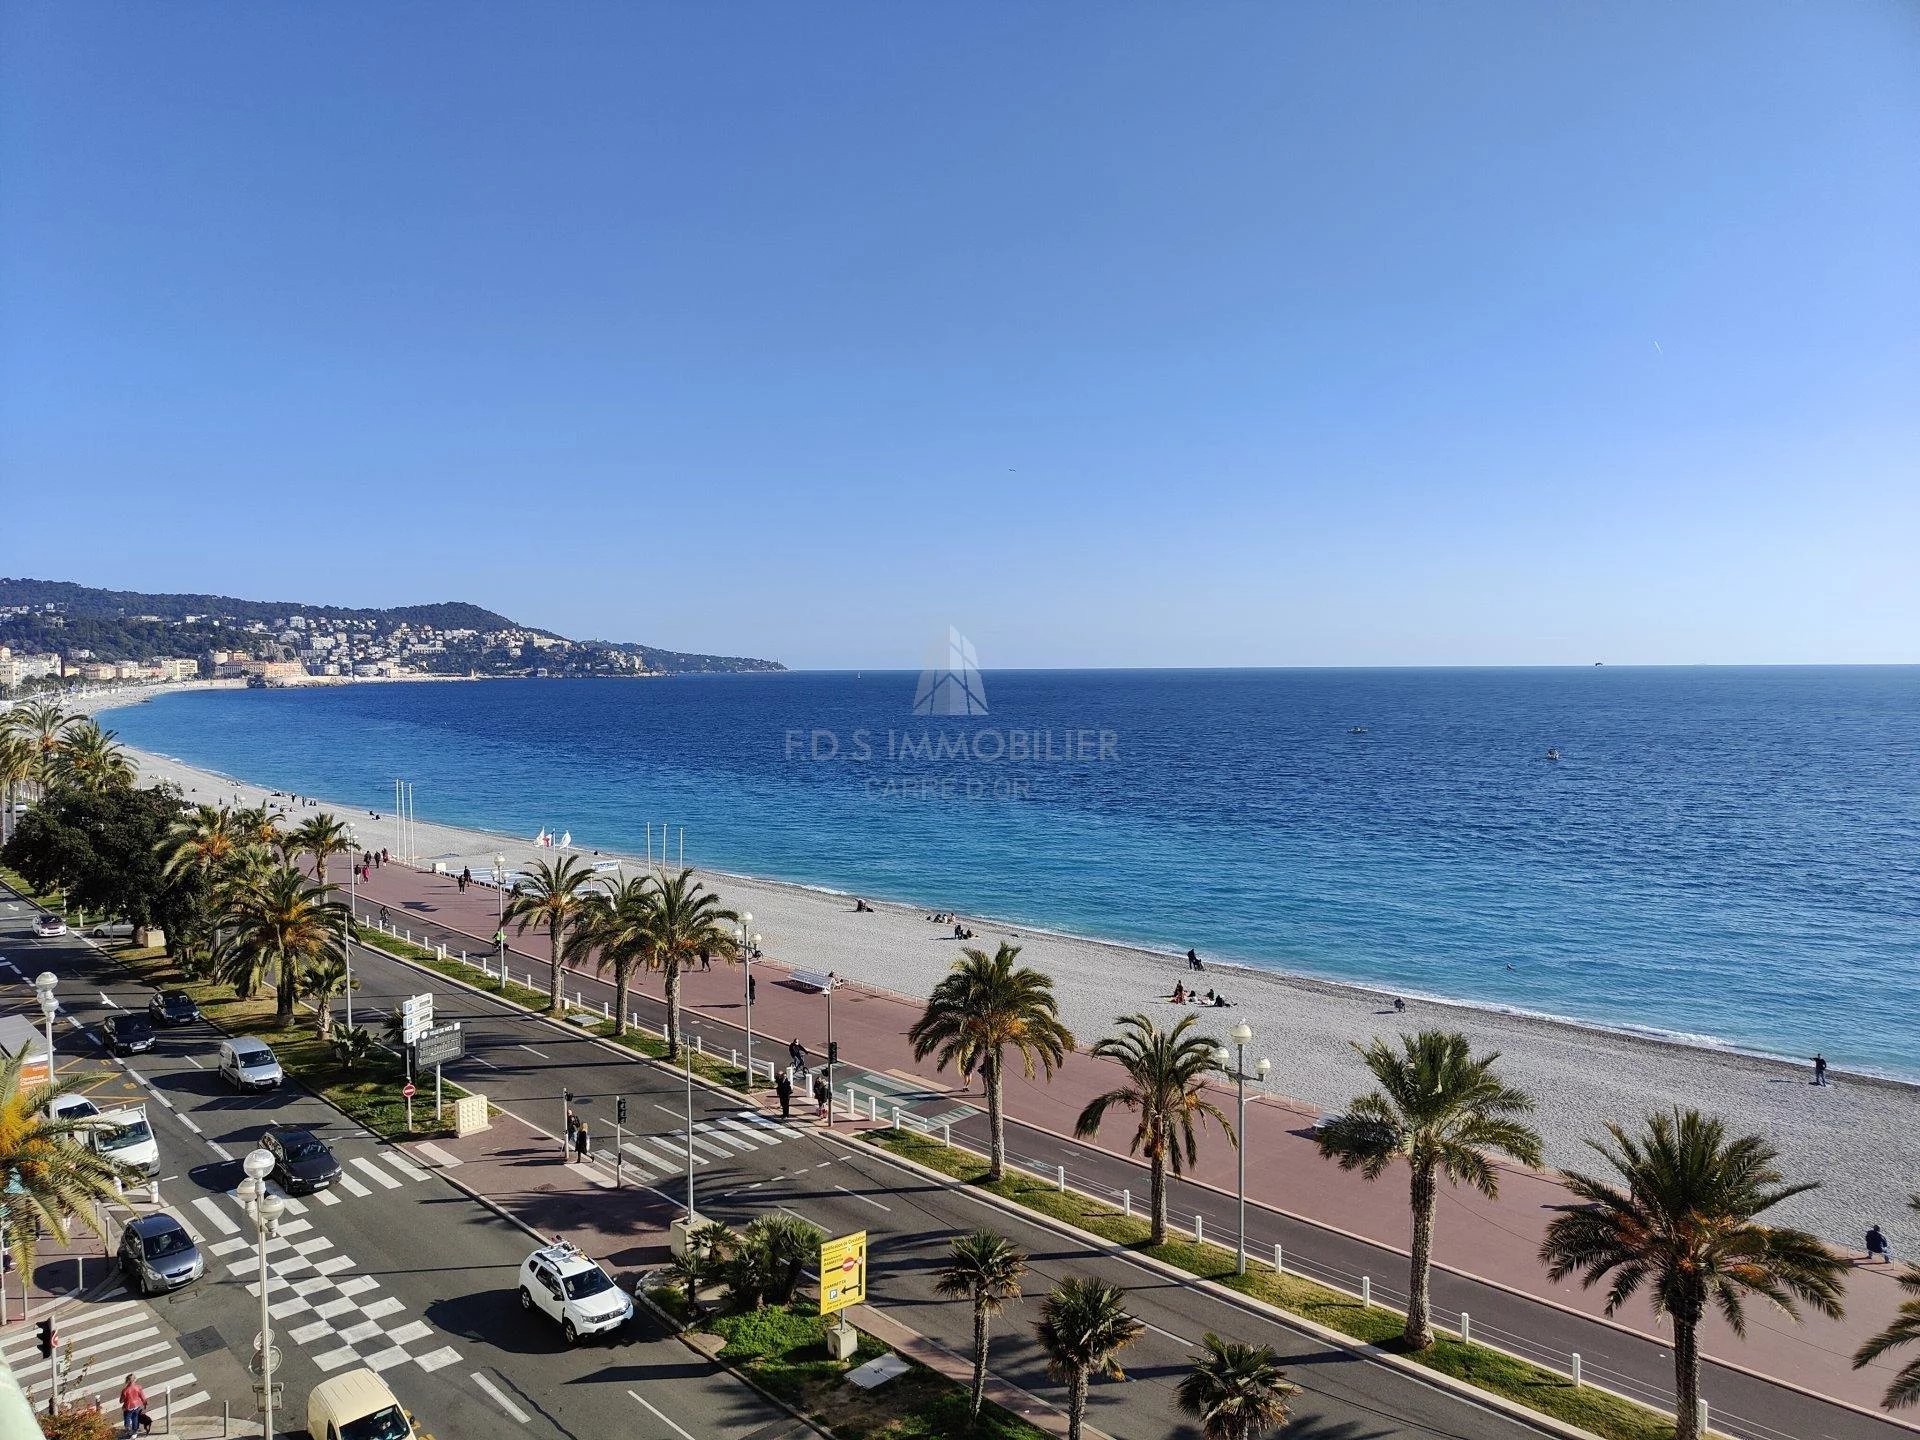 Vente Appartement 97m² 3 Pièces à Nice (06000) - Fds Immobilier Carré D'Or